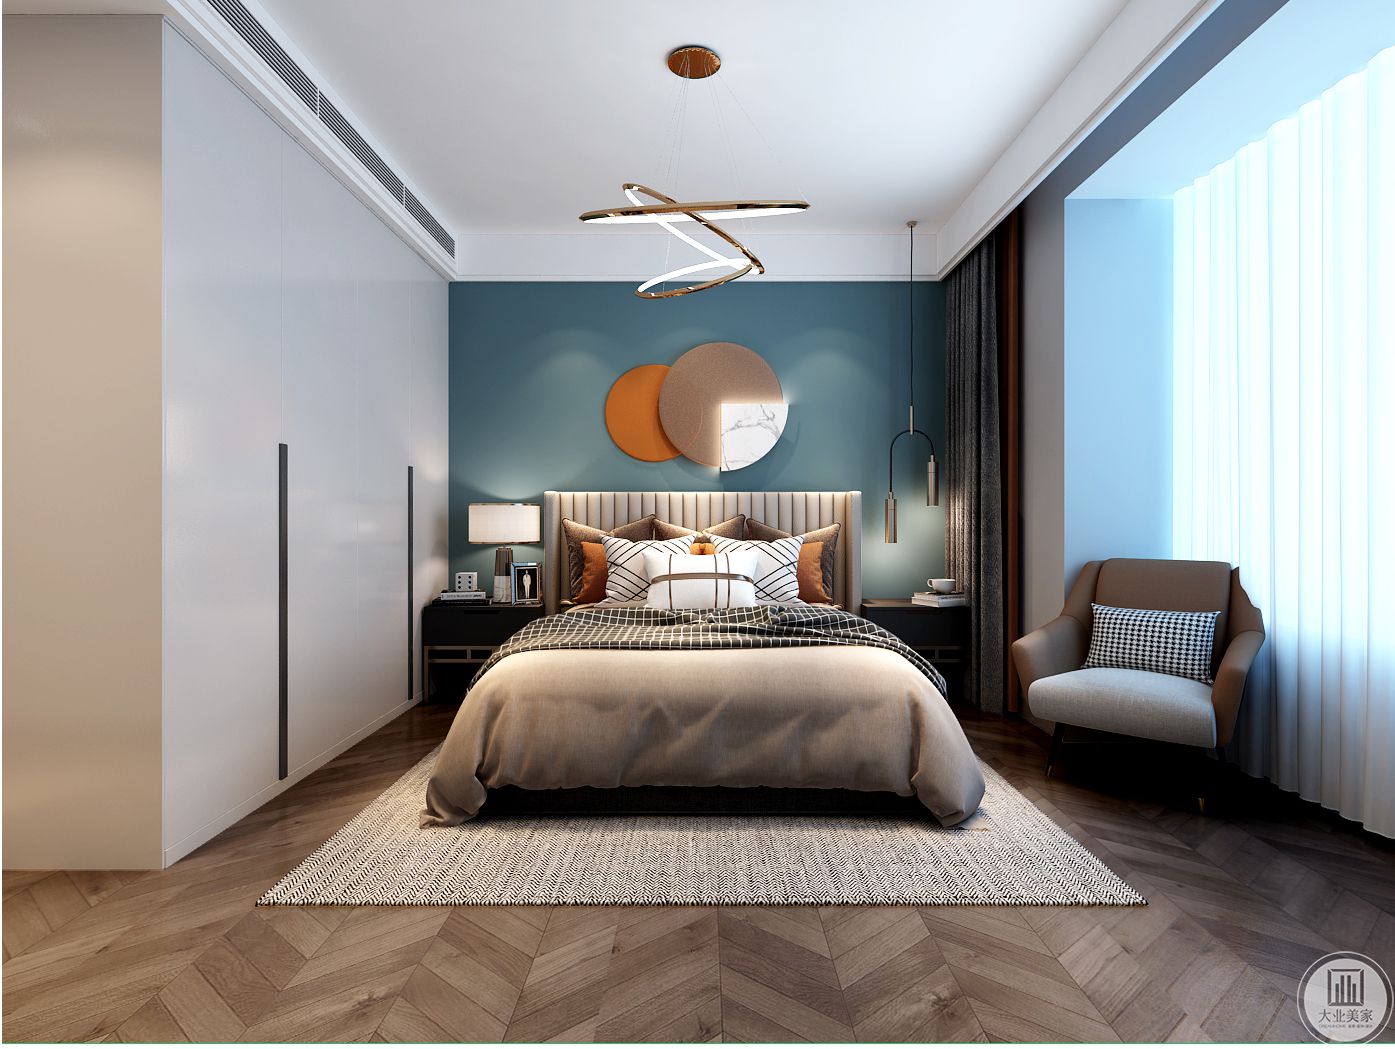 海蓝色床头背景搭配橘色软装壁灯，互补又舒适，温馨舒适的感觉